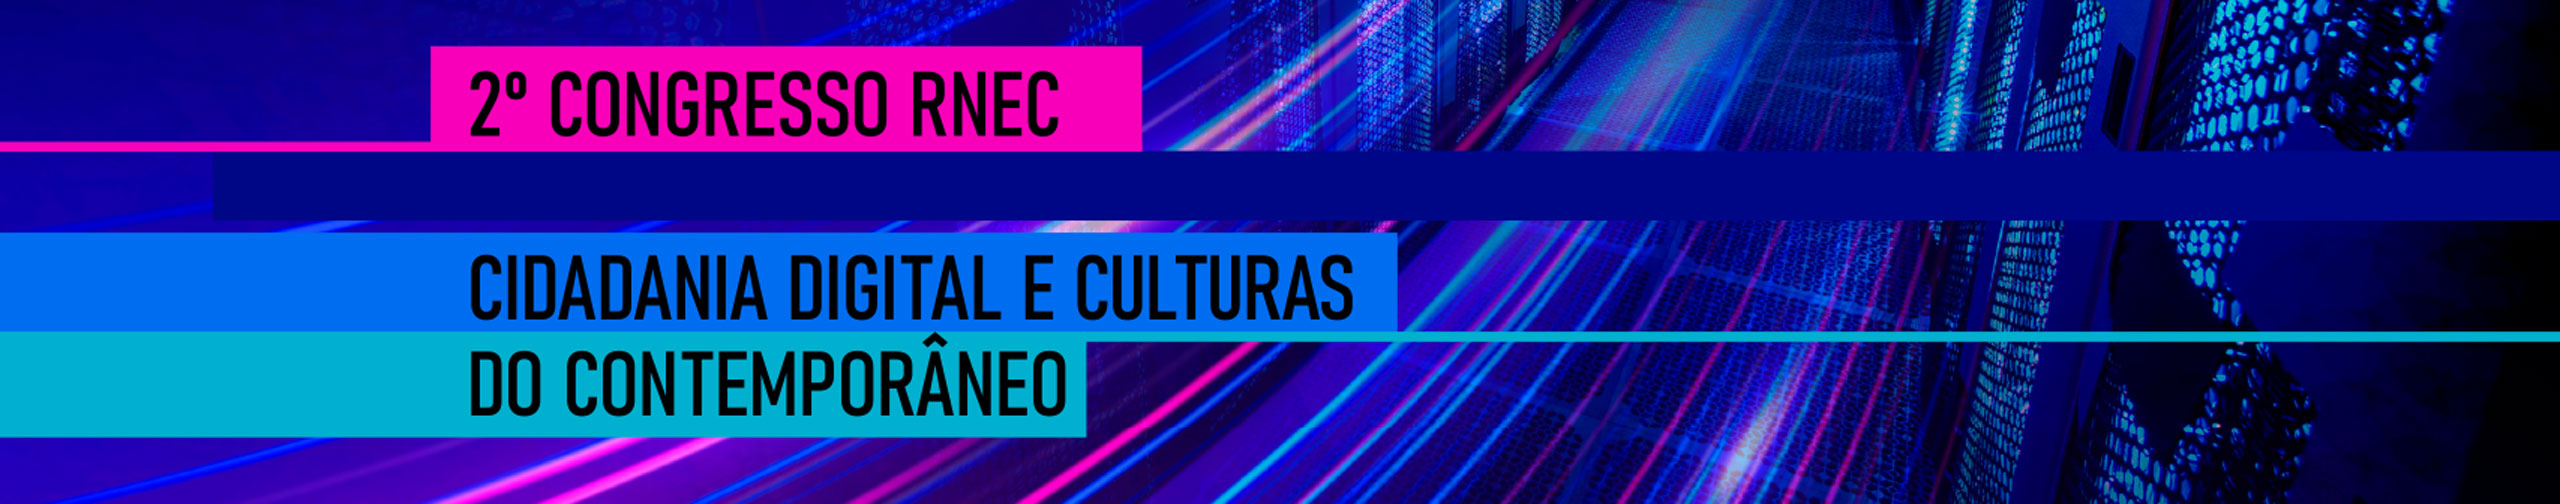 2º Congresso RNEC - Cidadania Digital e Culturais do Contemporâneo